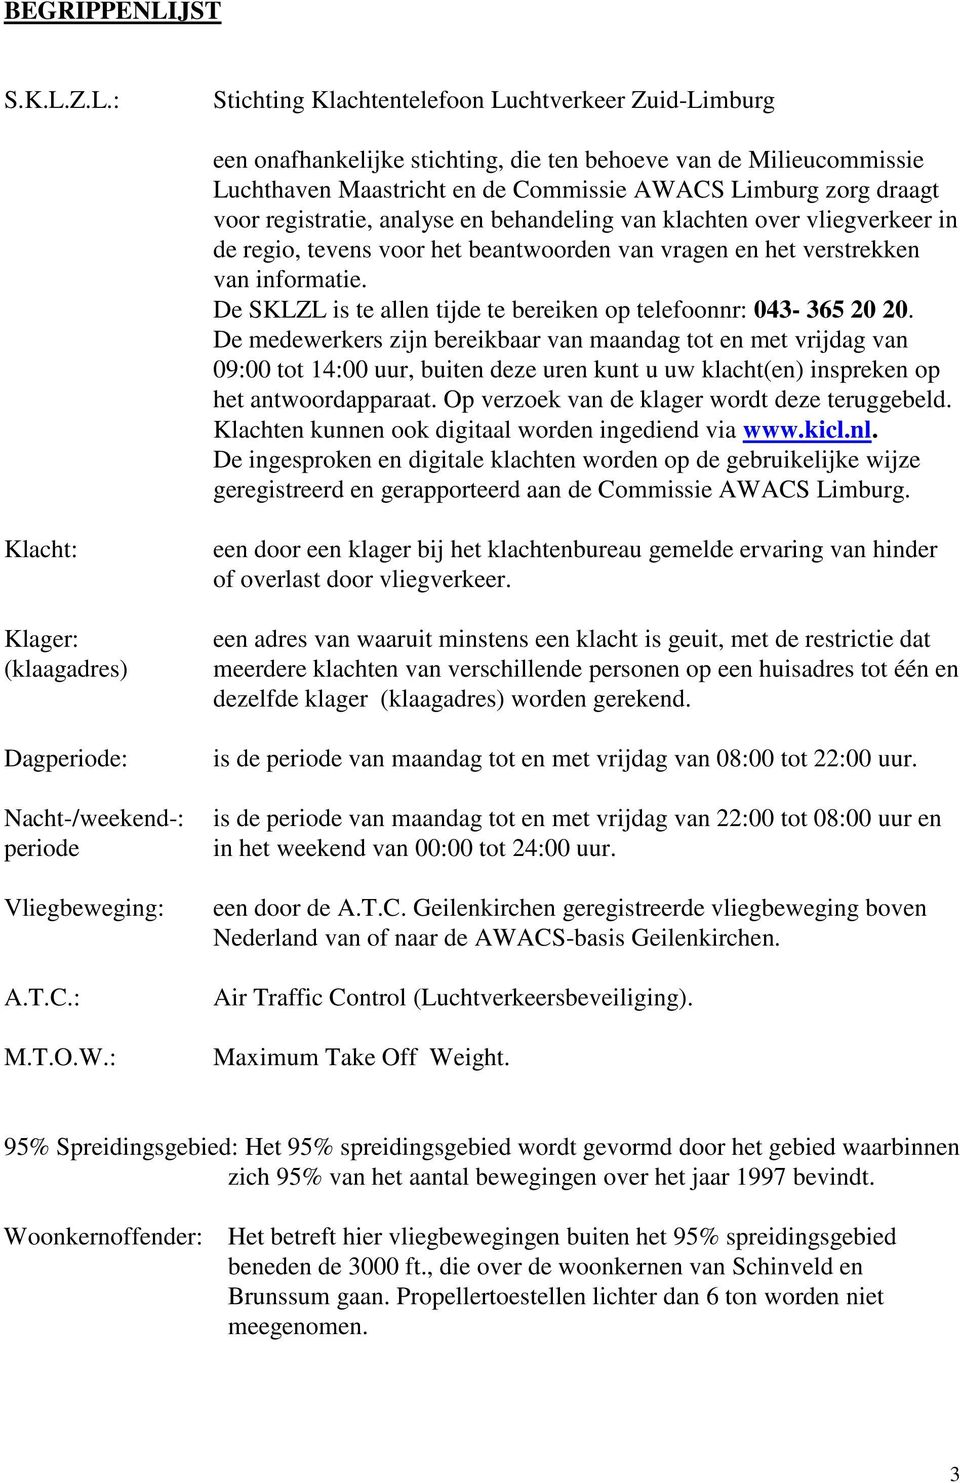 Z.L.: Stichting Klachtentelefoon Luchtverkeer Zuid-Limburg een onafhankelijke stichting, die ten behoeve van de Milieucommissie Luchthaven Maastricht en de Commissie AWACS Limburg zorg draagt voor